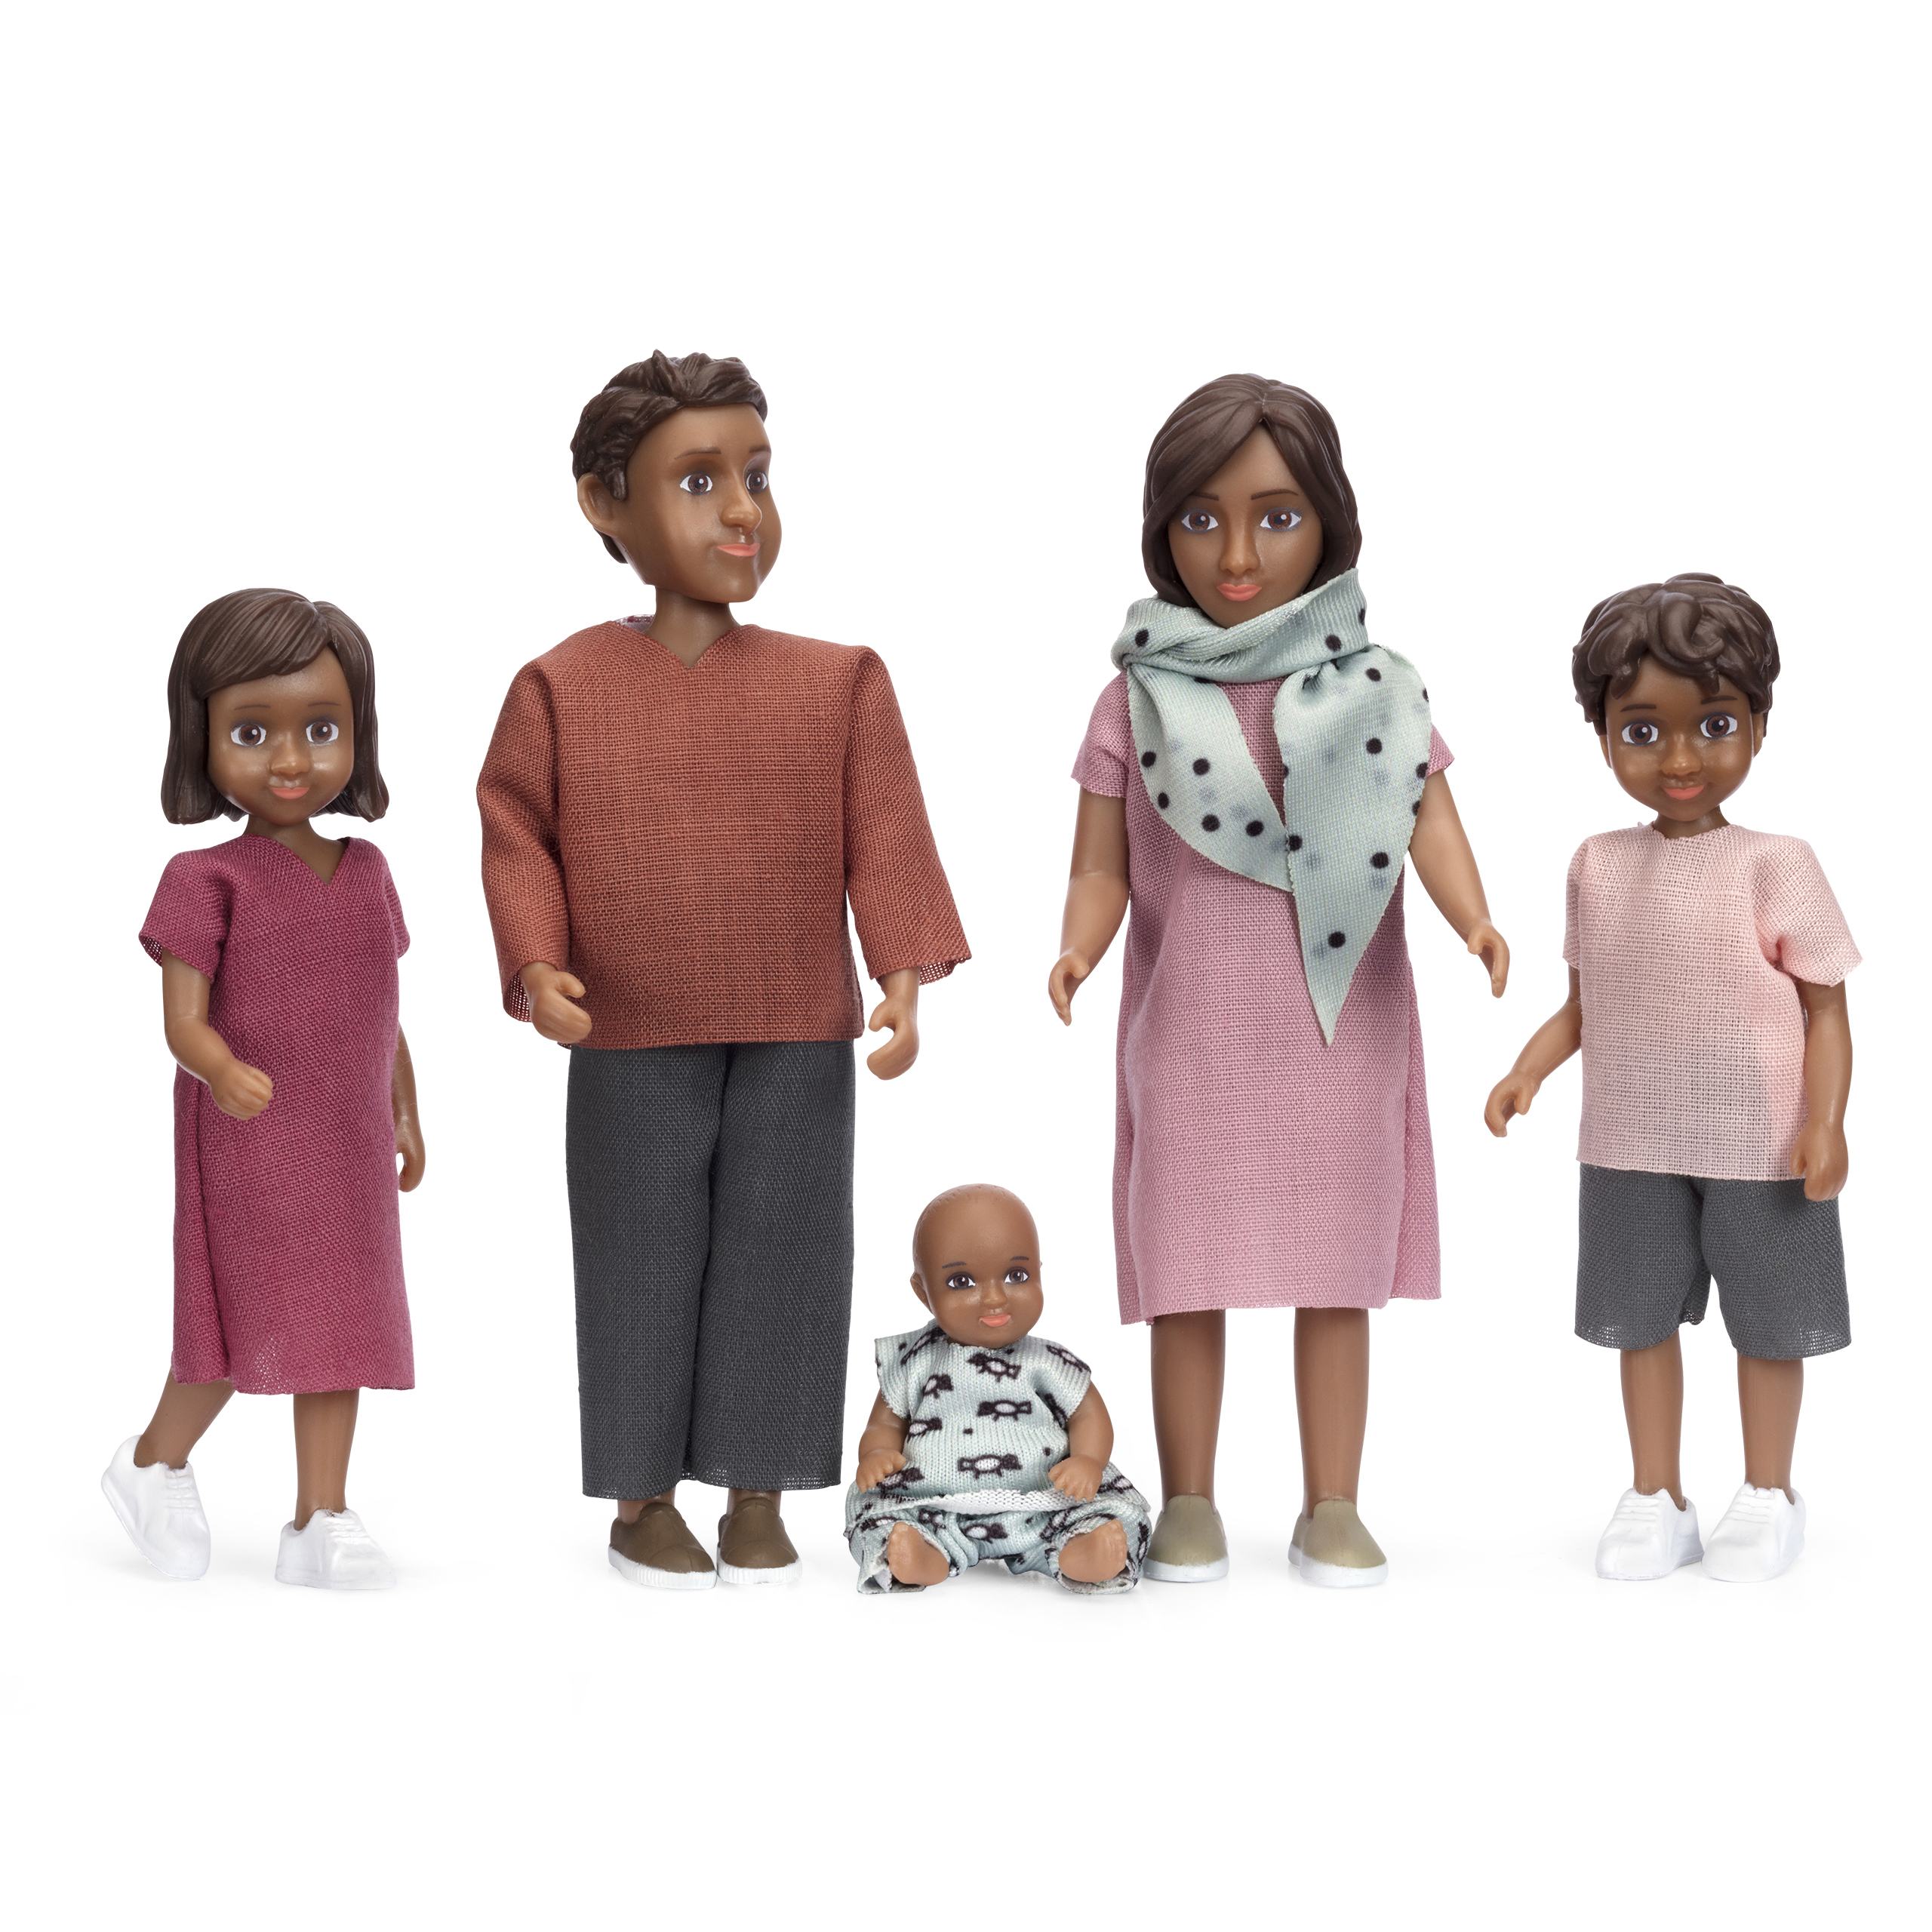 Dark-skinned dolls lundby	doll house dolls set nikki